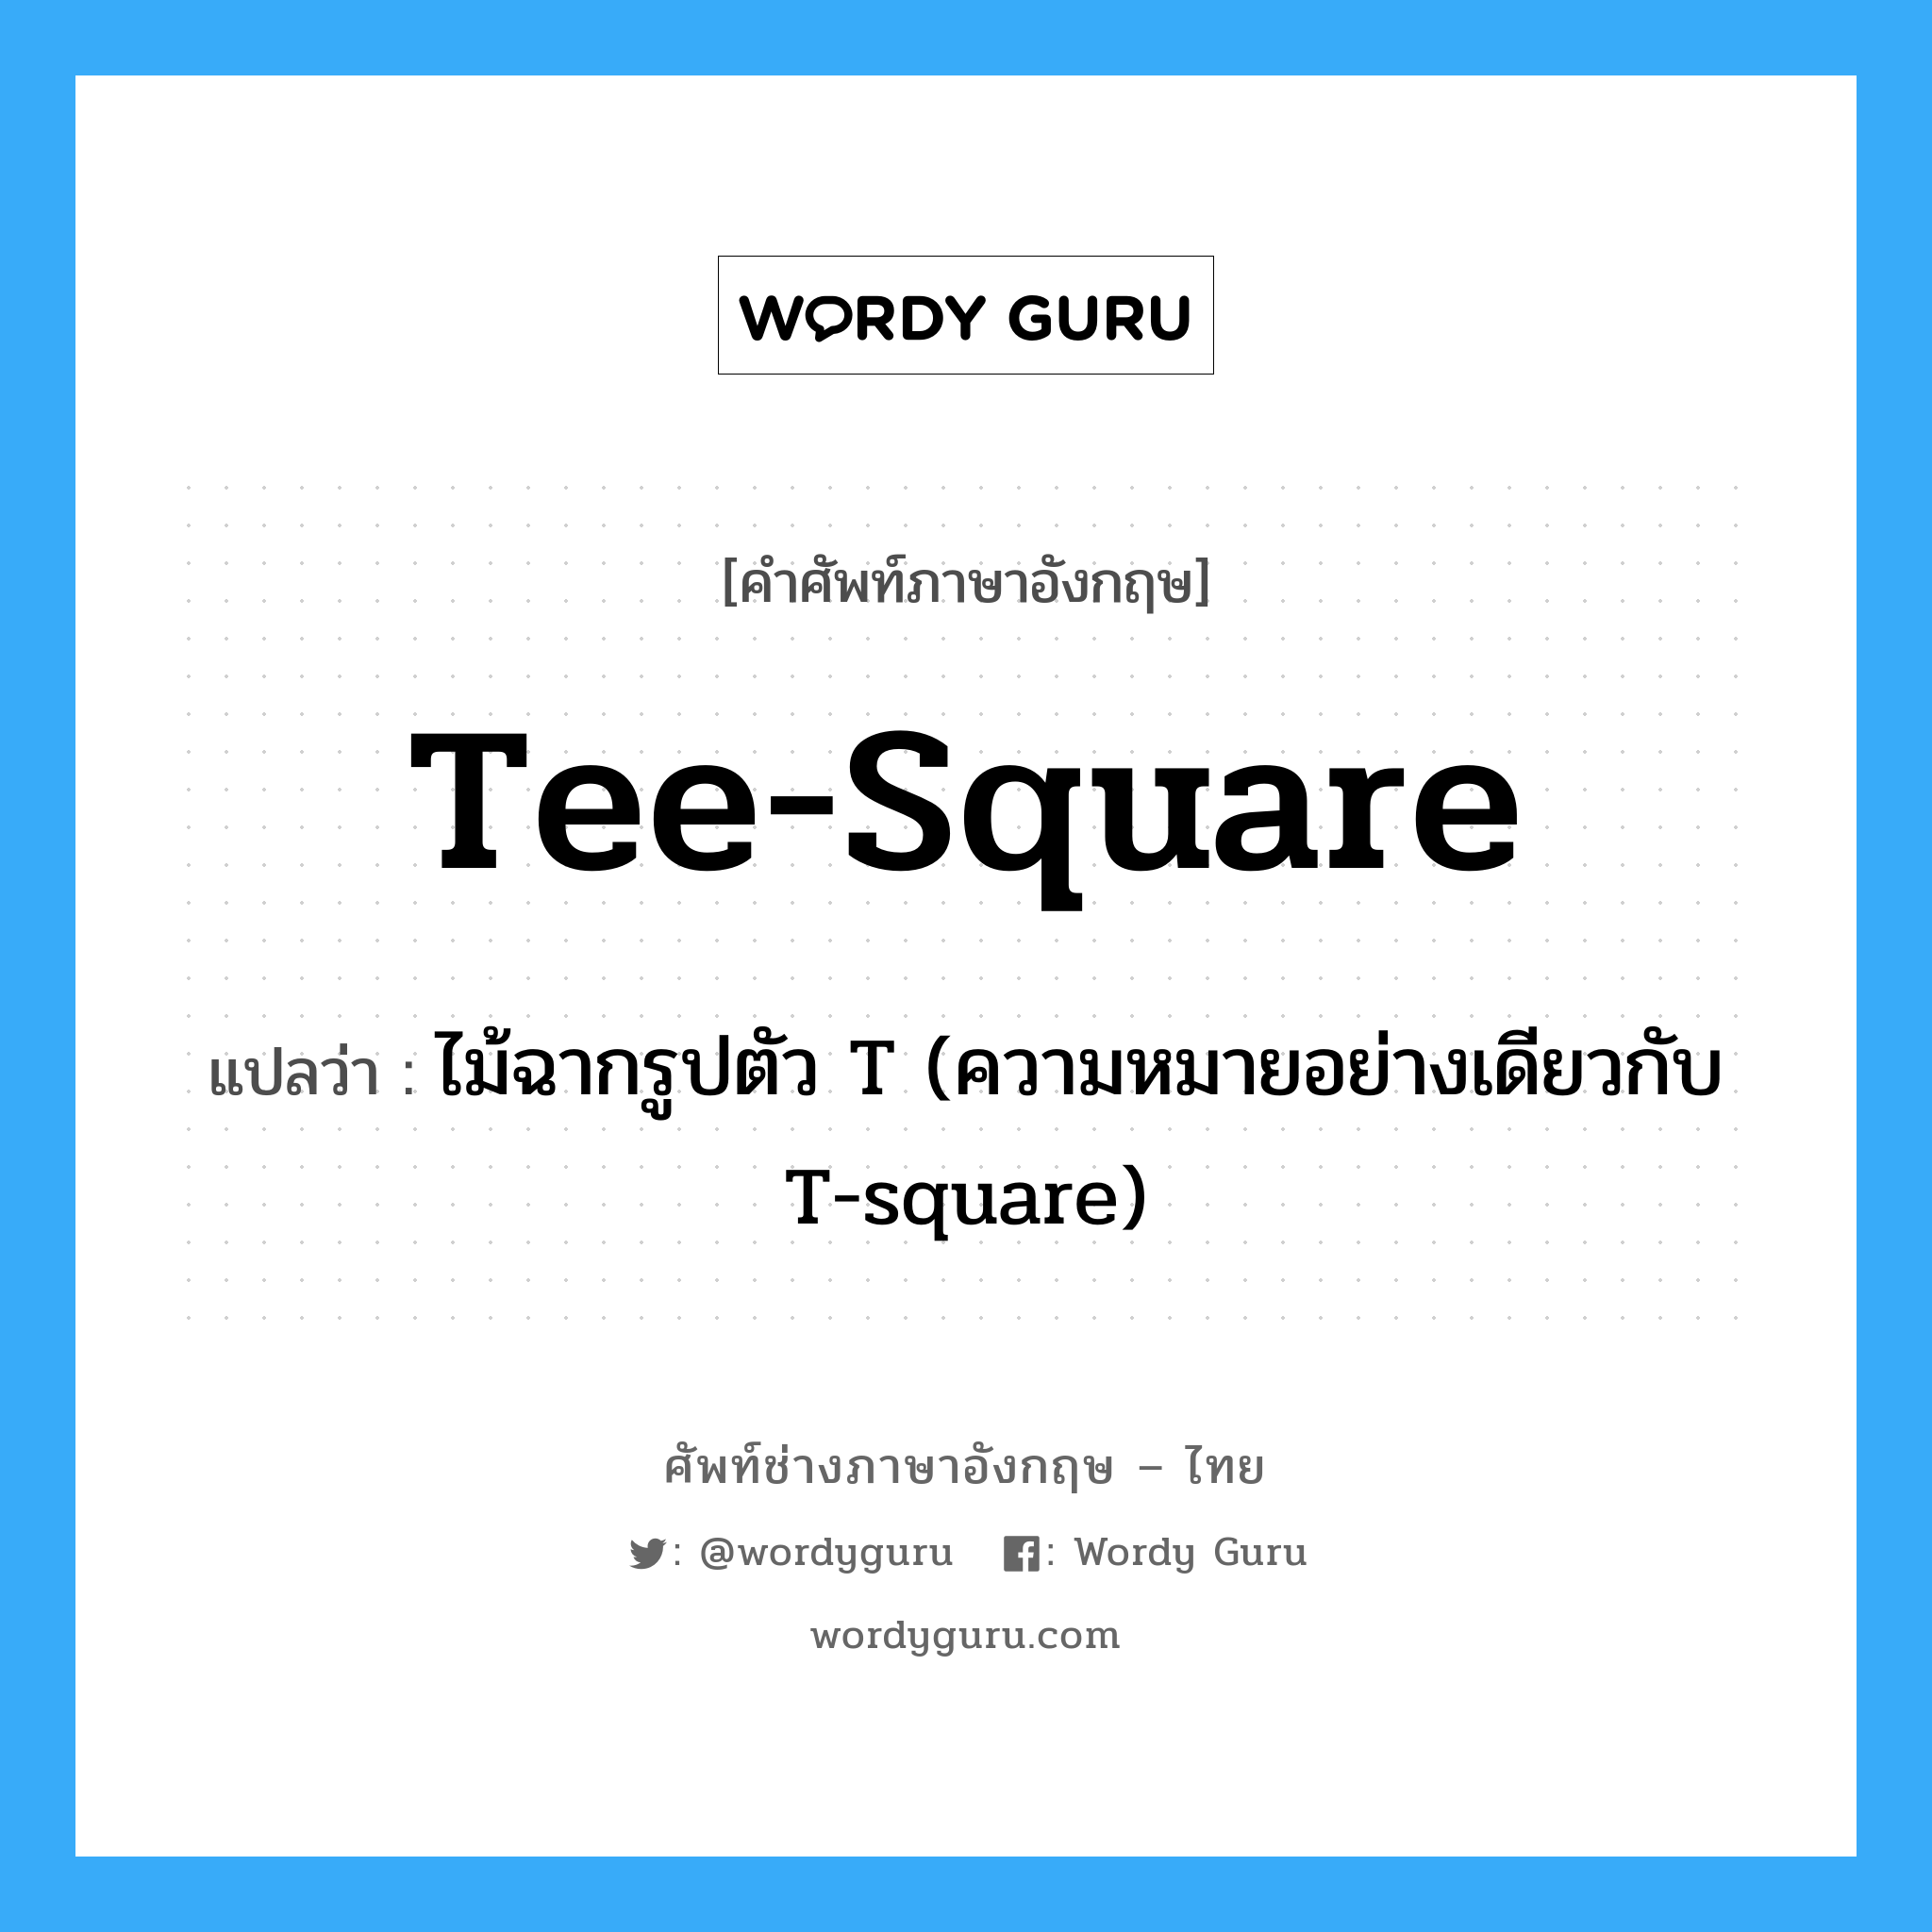 tee-square แปลว่า?, คำศัพท์ช่างภาษาอังกฤษ - ไทย tee-square คำศัพท์ภาษาอังกฤษ tee-square แปลว่า ไม้ฉากรูปตัว T (ความหมายอย่างเดียวกับ T-square)